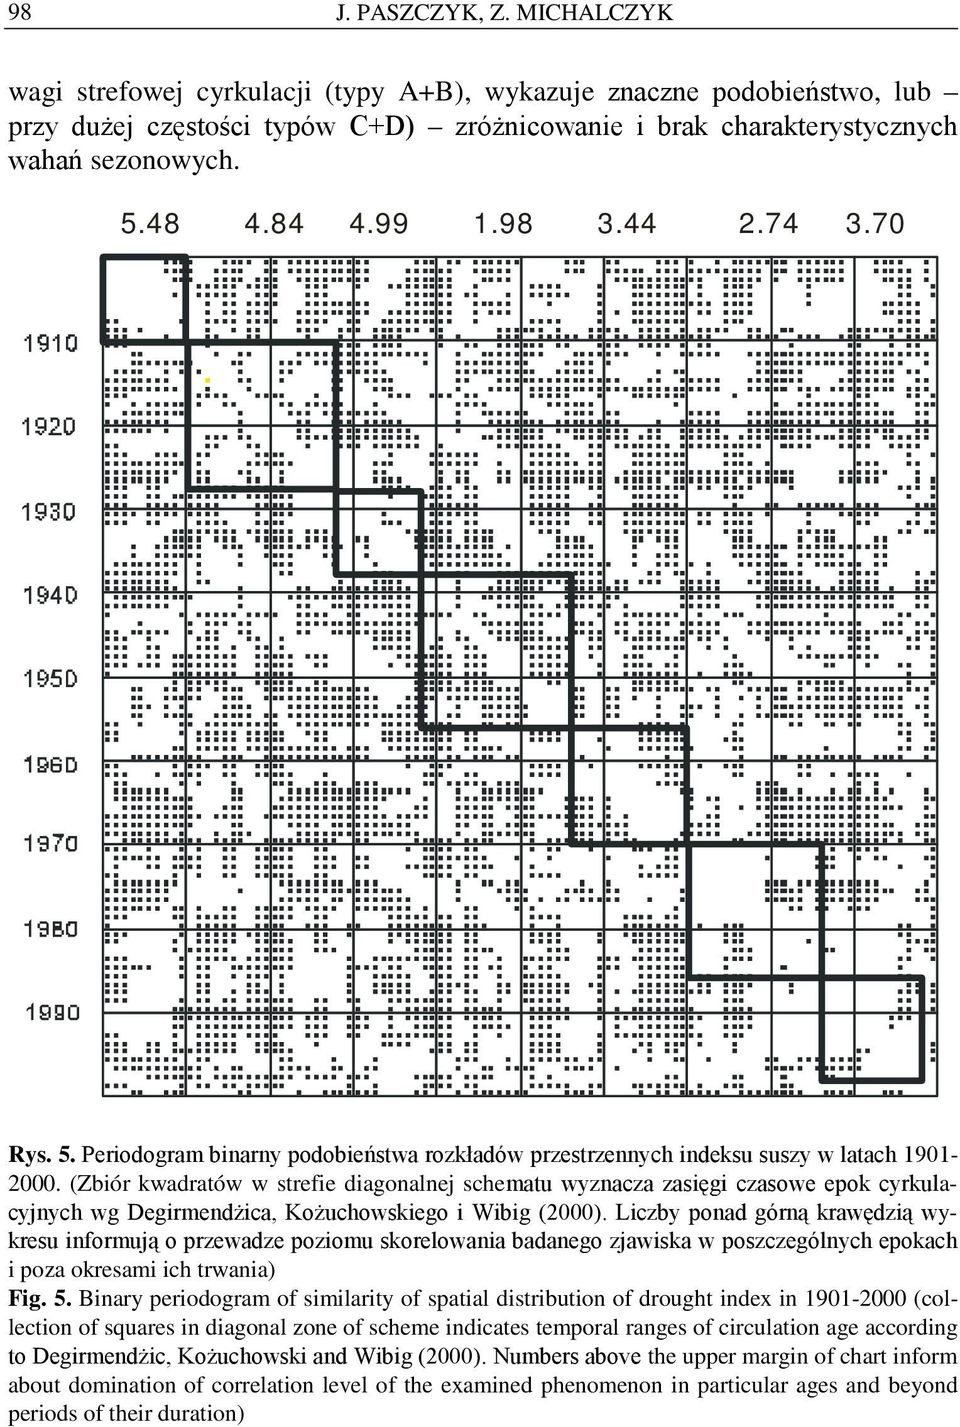 (Zbór kwadratów w strefe dagonalnej schematu wyznacza zasęg czasowe epok cyrkulacyjnych wg Degrmendżca, Kożuchowskego Wbg (2000).